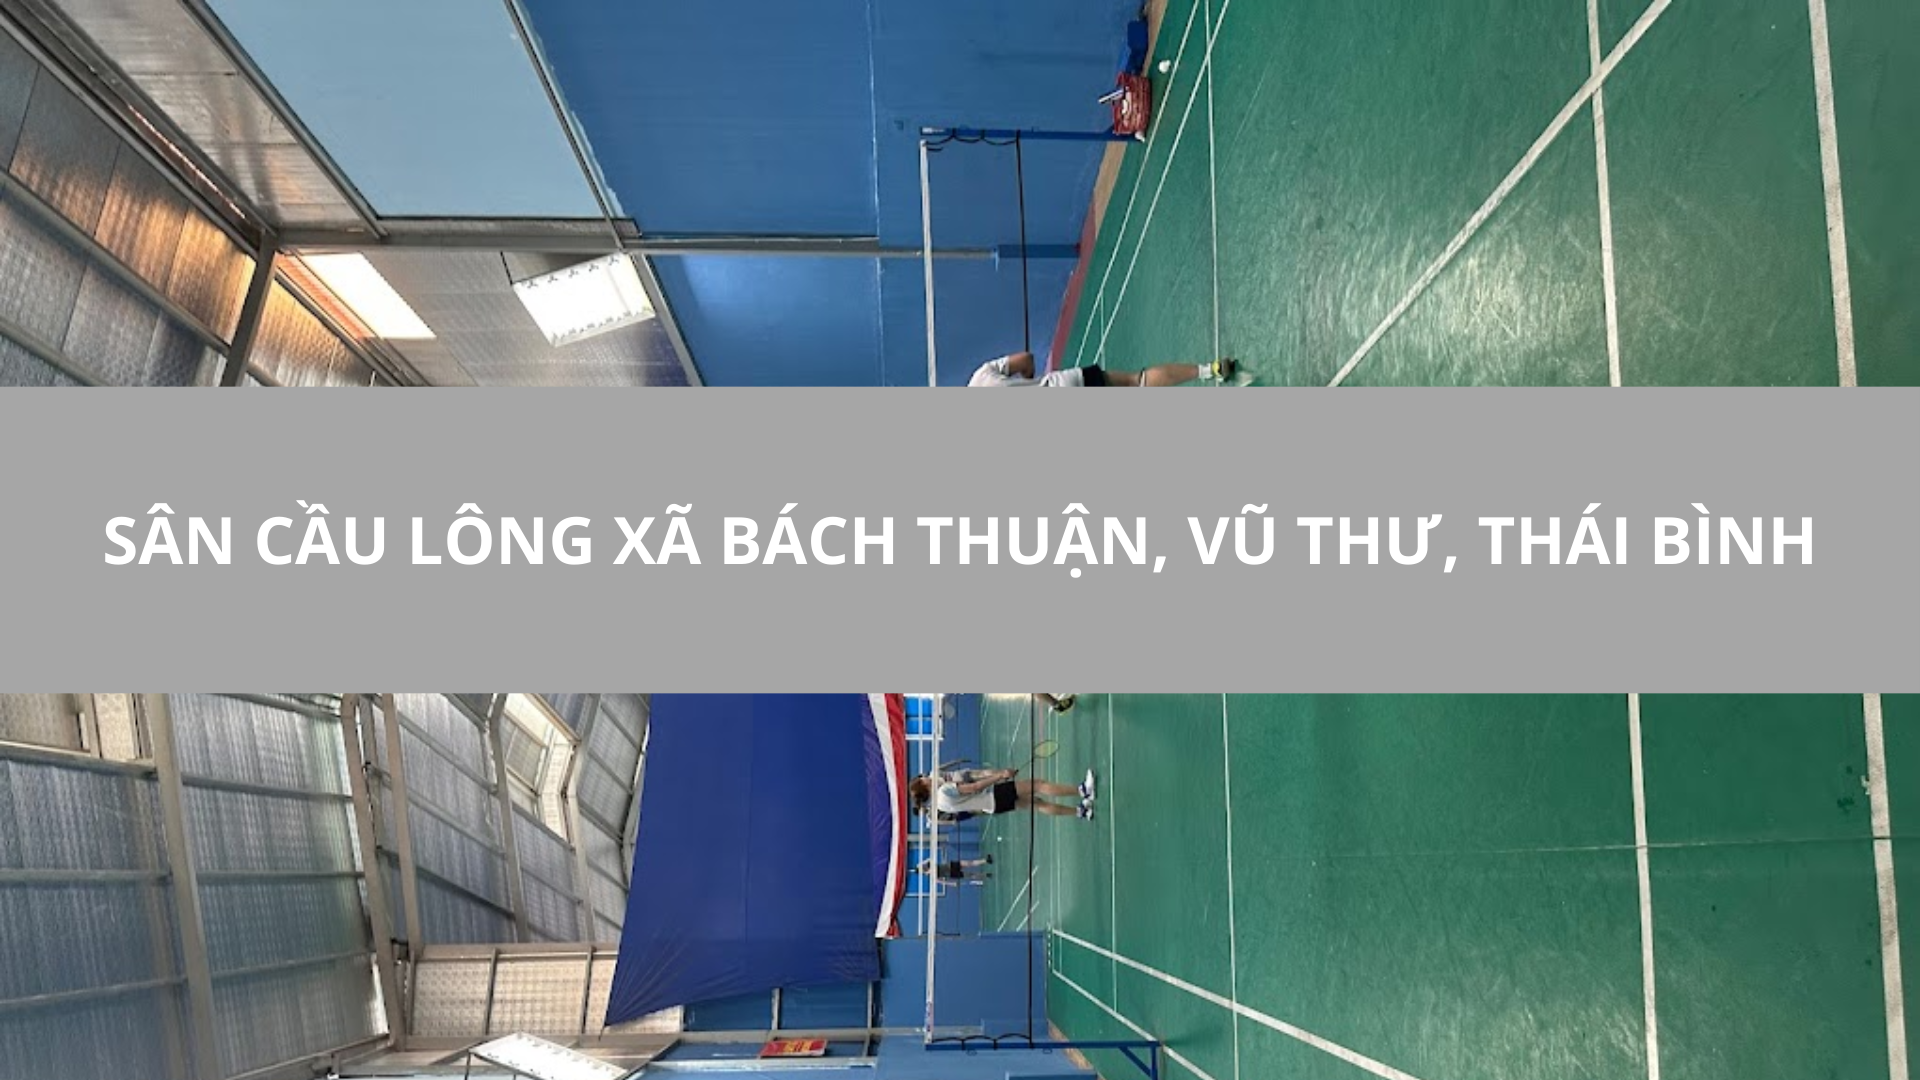 Sân Cầu Lông xã Bách Thuận, Vũ Thư, Thái Bình